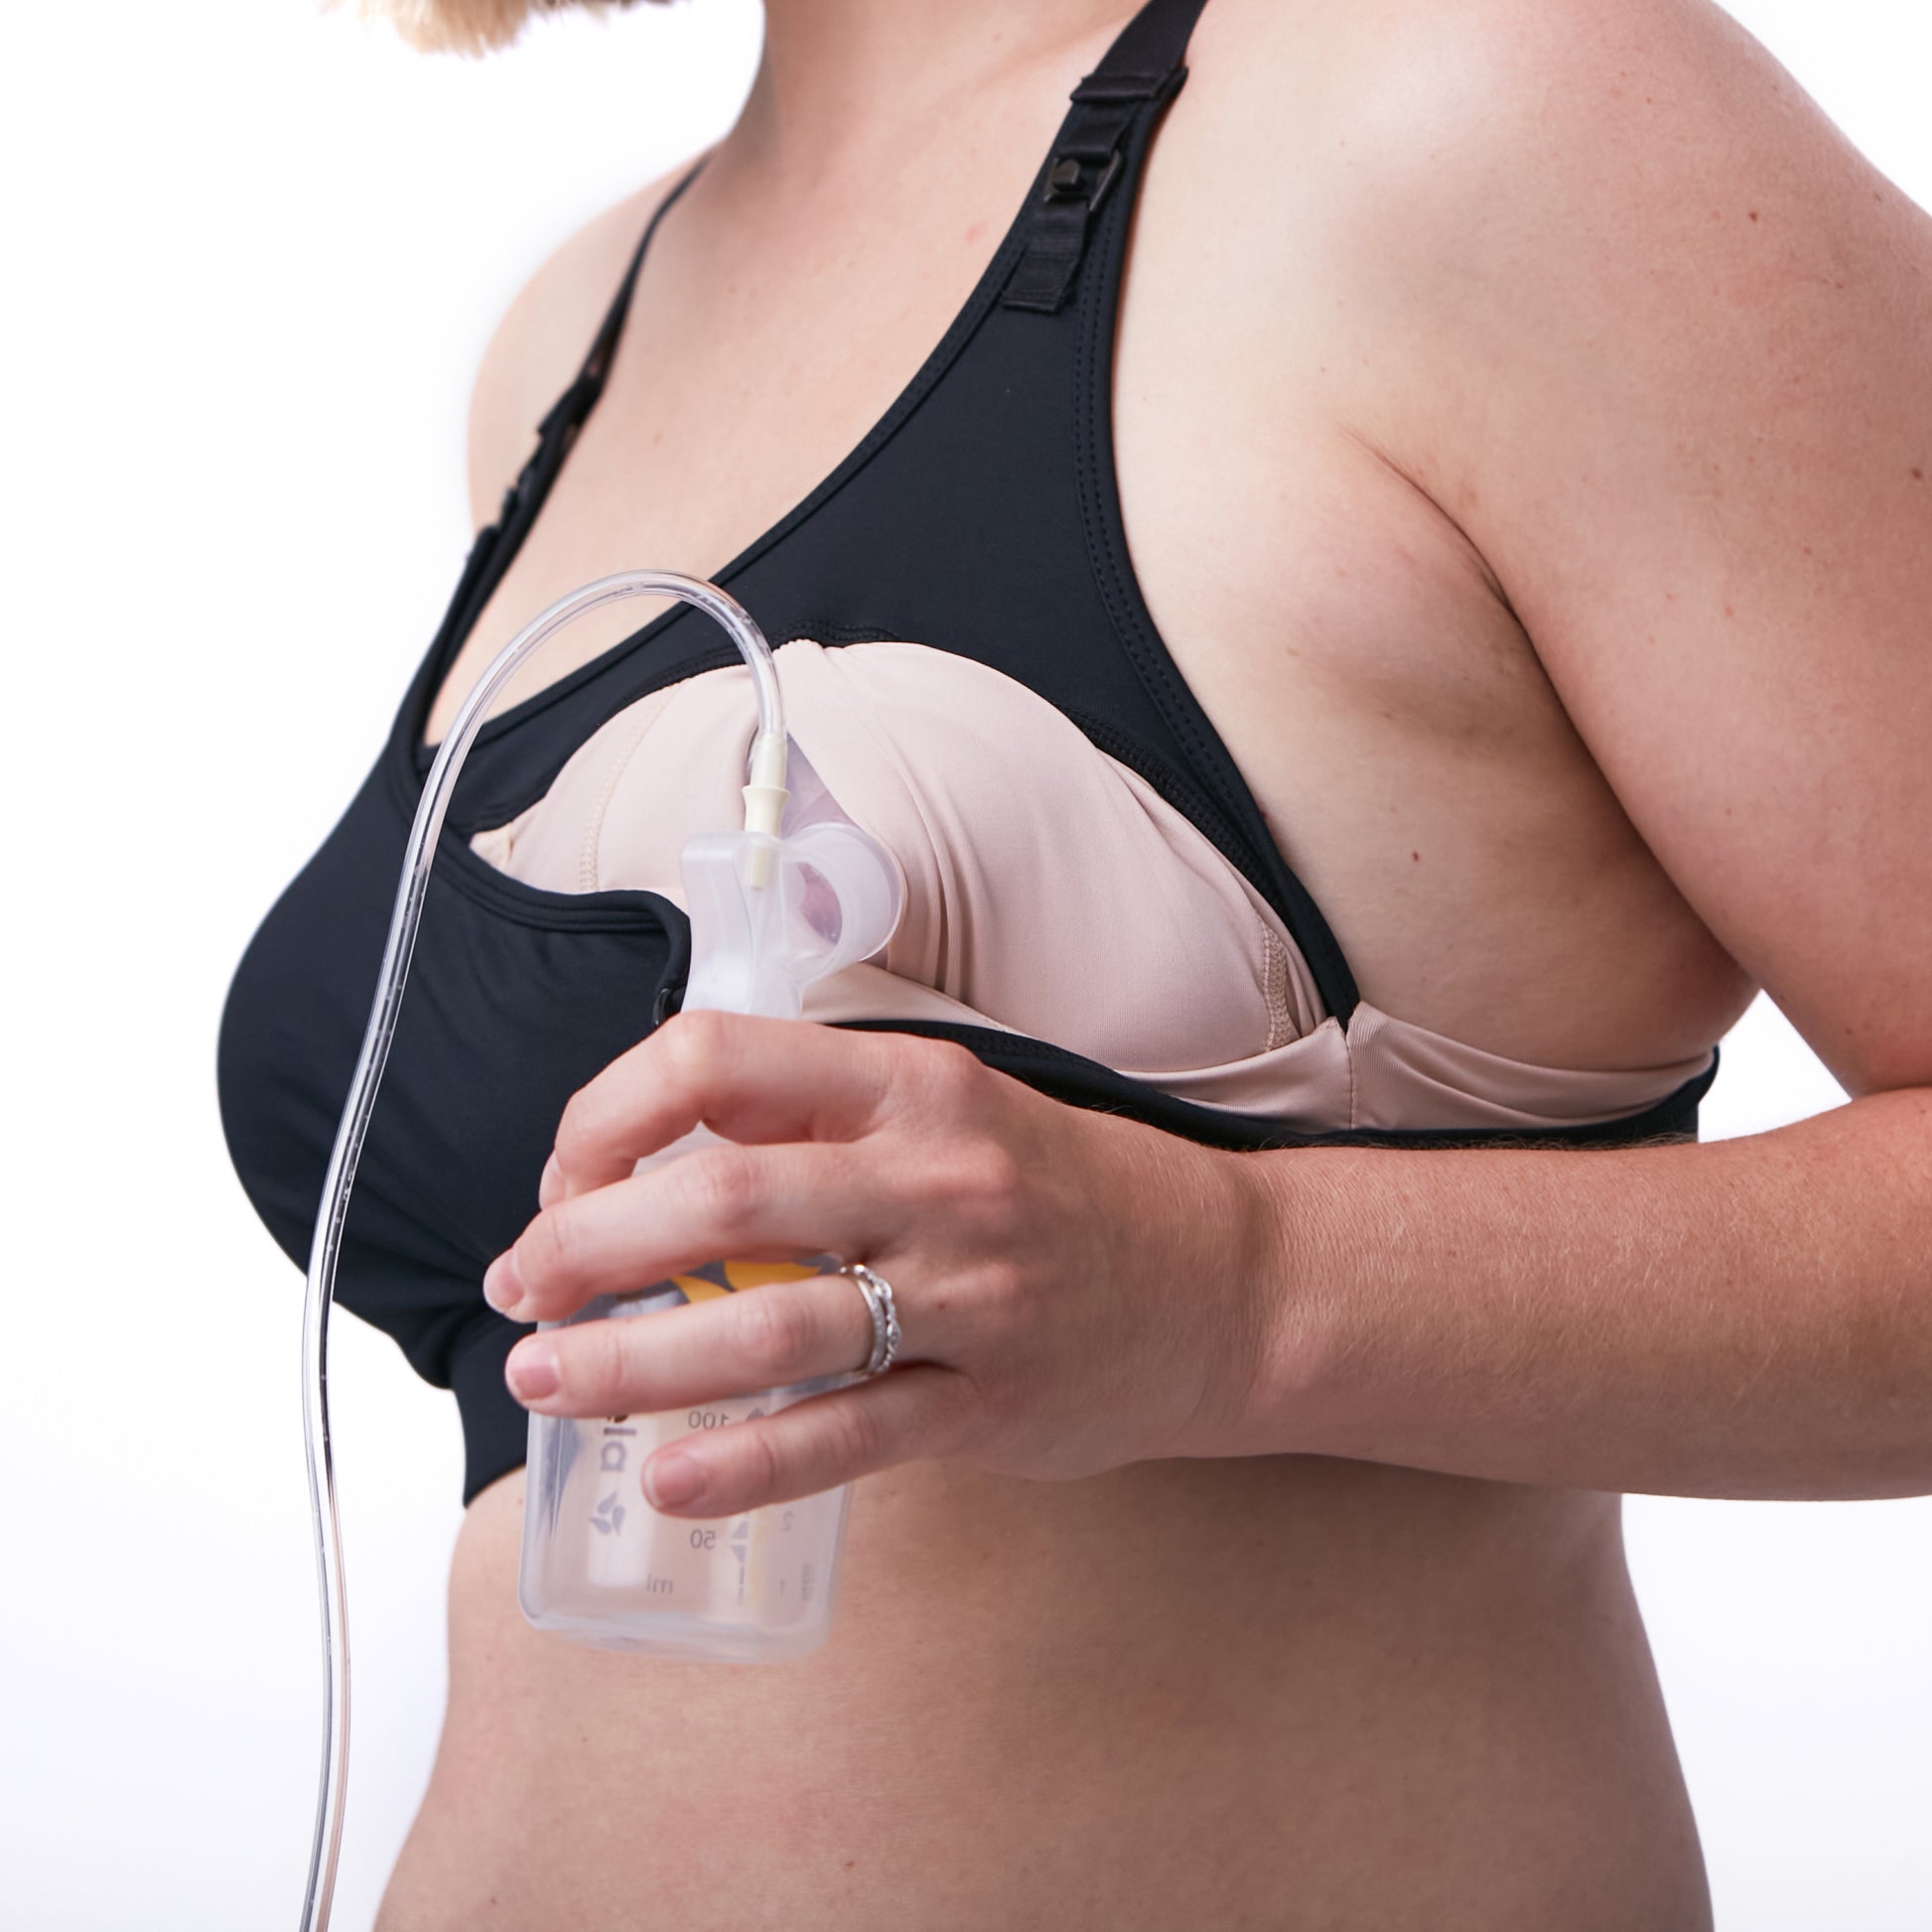 Nursing bras - Breastfeeding, Forums